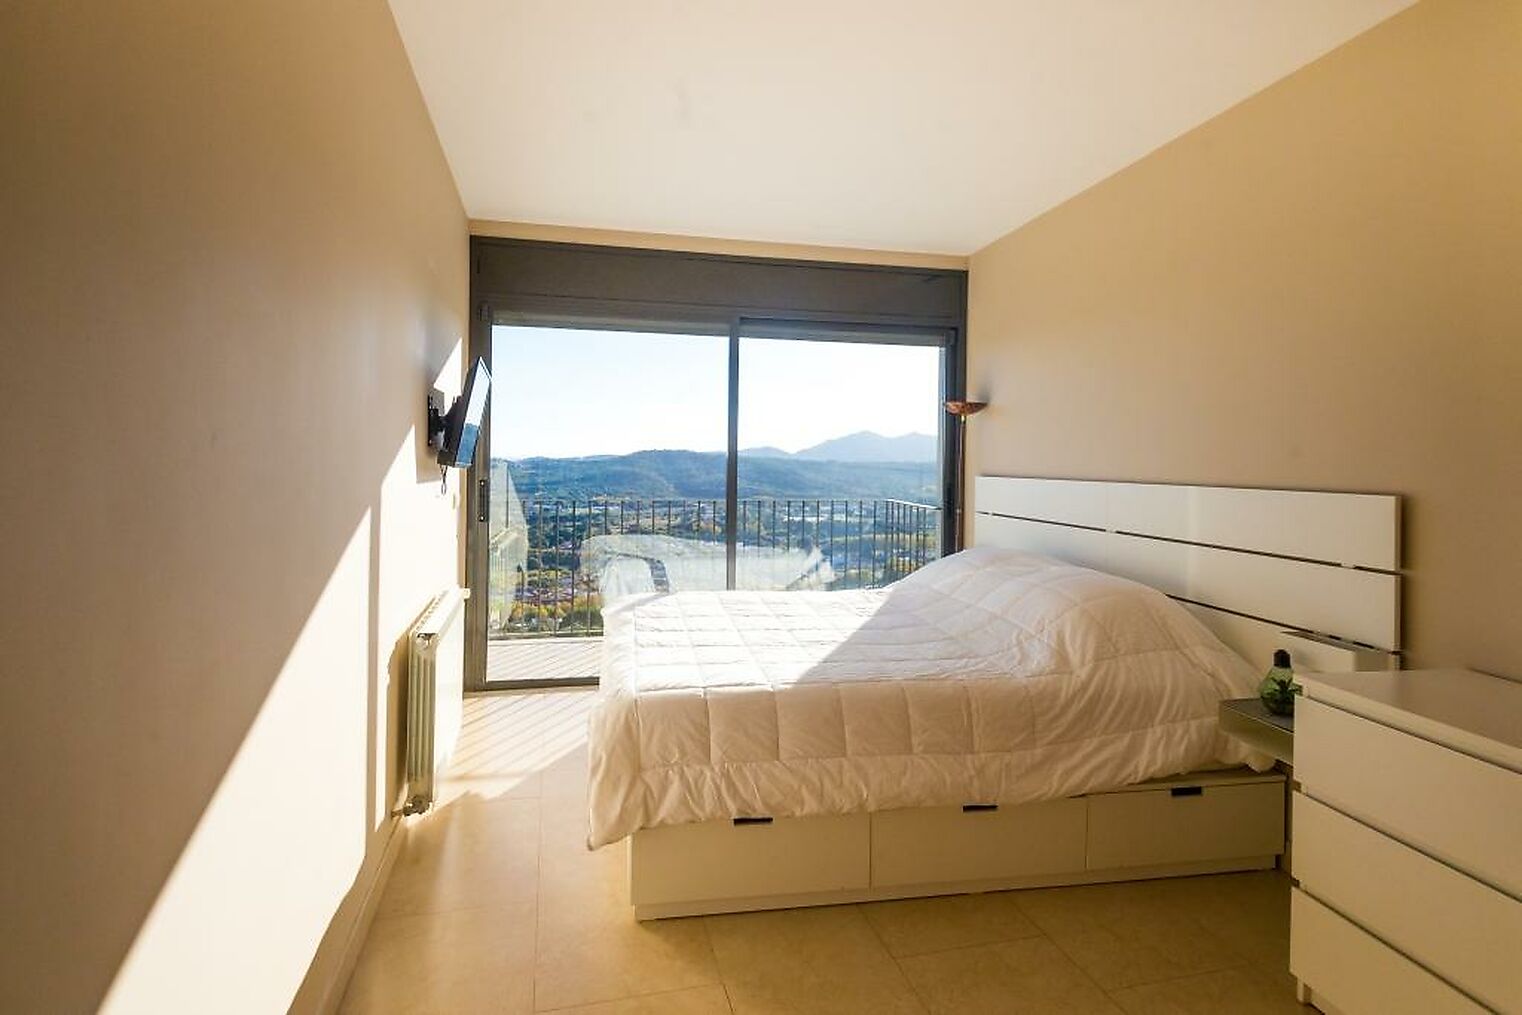 Casa moderna con vistas panorámicas en Platja d'Aro